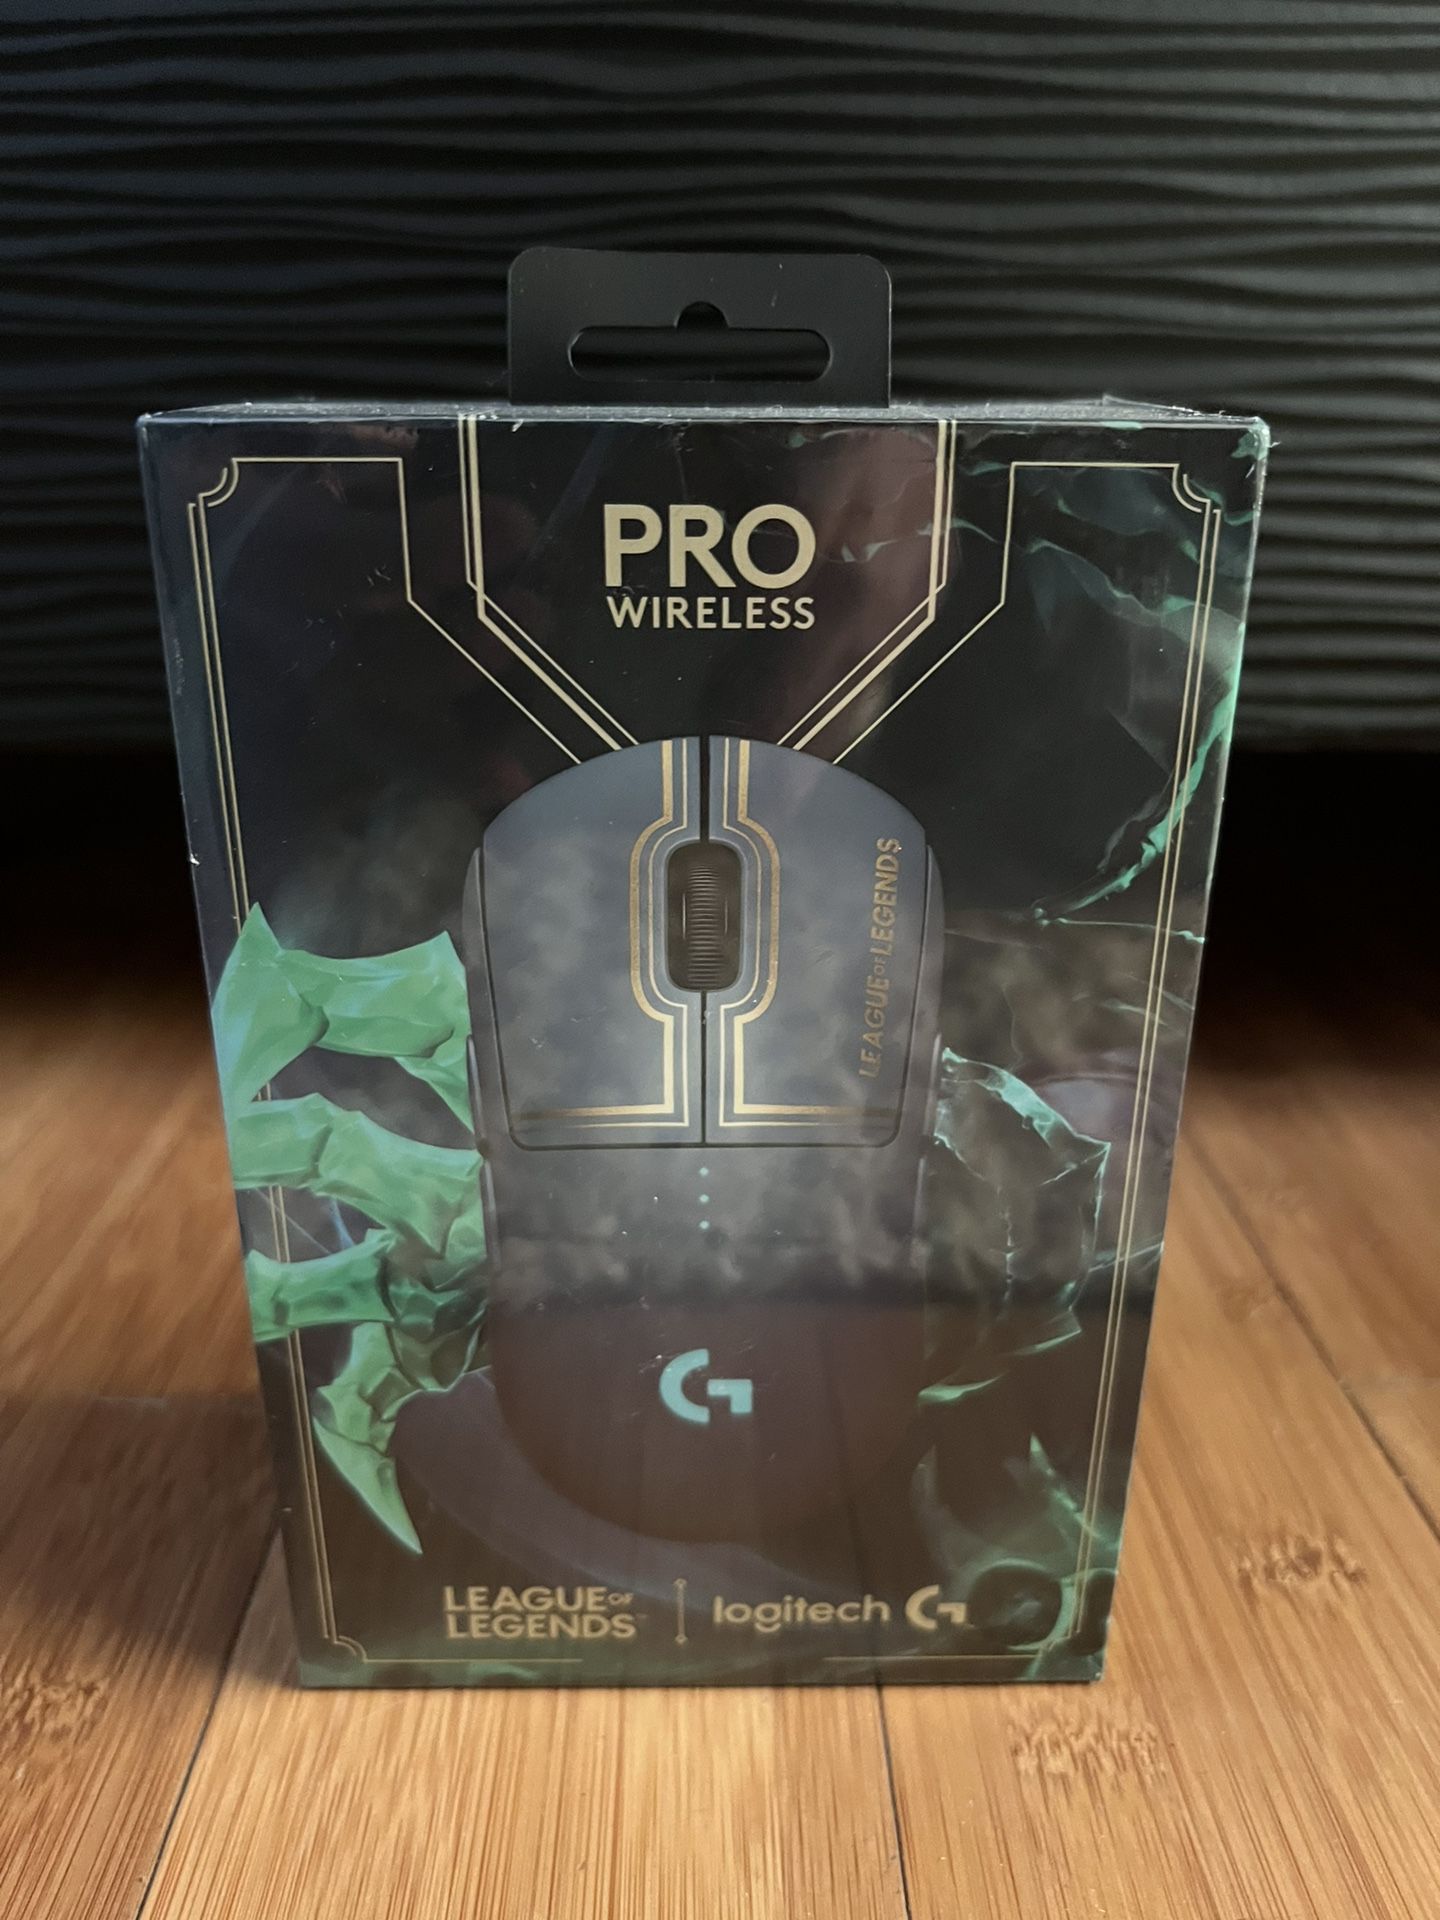 Logitech Pro Wireless Mouse - League of Legends Edition